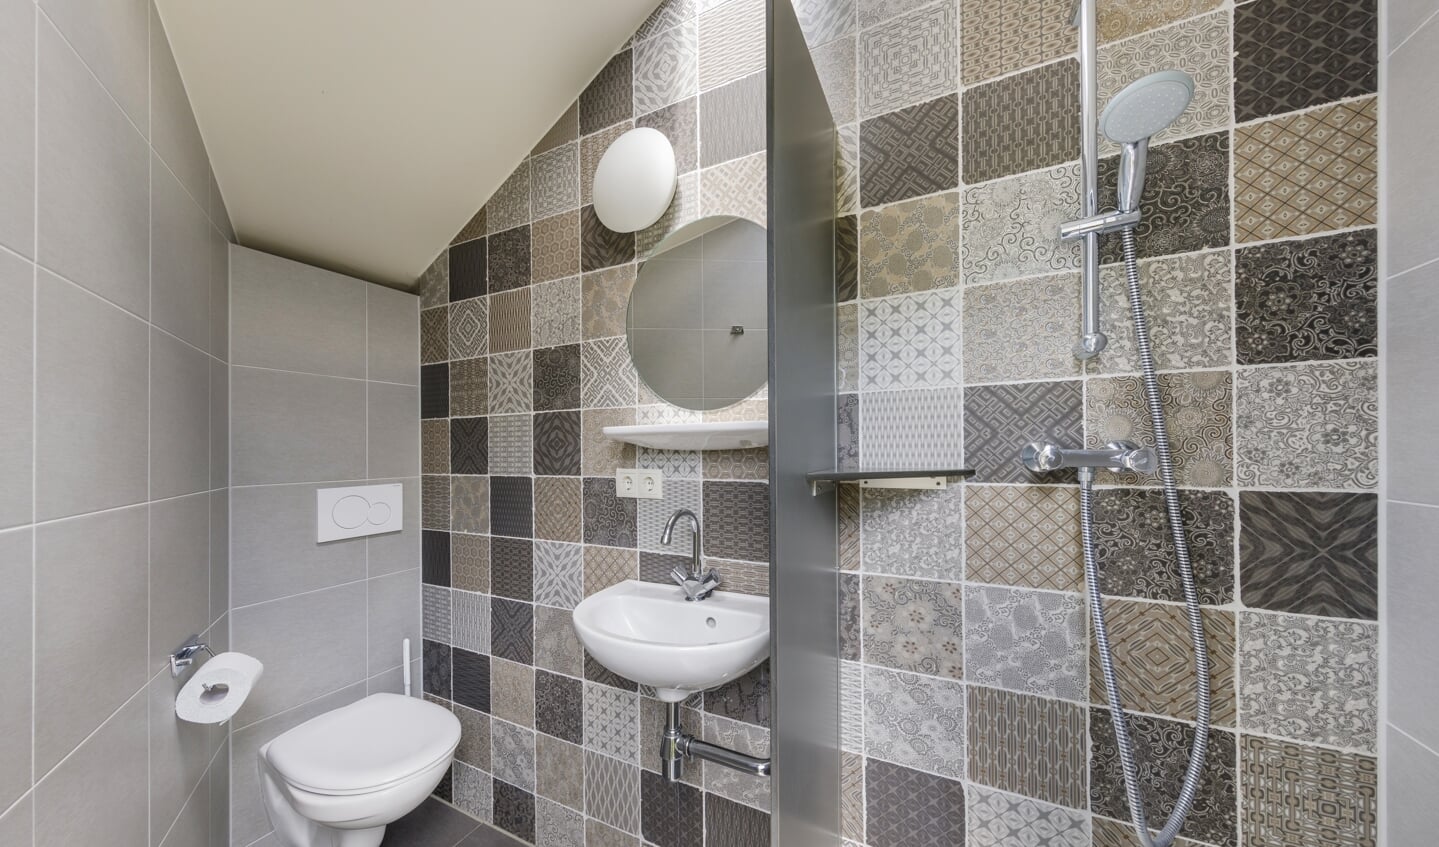 Bij De Twee Bruggen in Winterswijk zijn kampeerplekken met privé-sanitair met een eigen douche, wc en wastafel. Foto: Ton Hurks